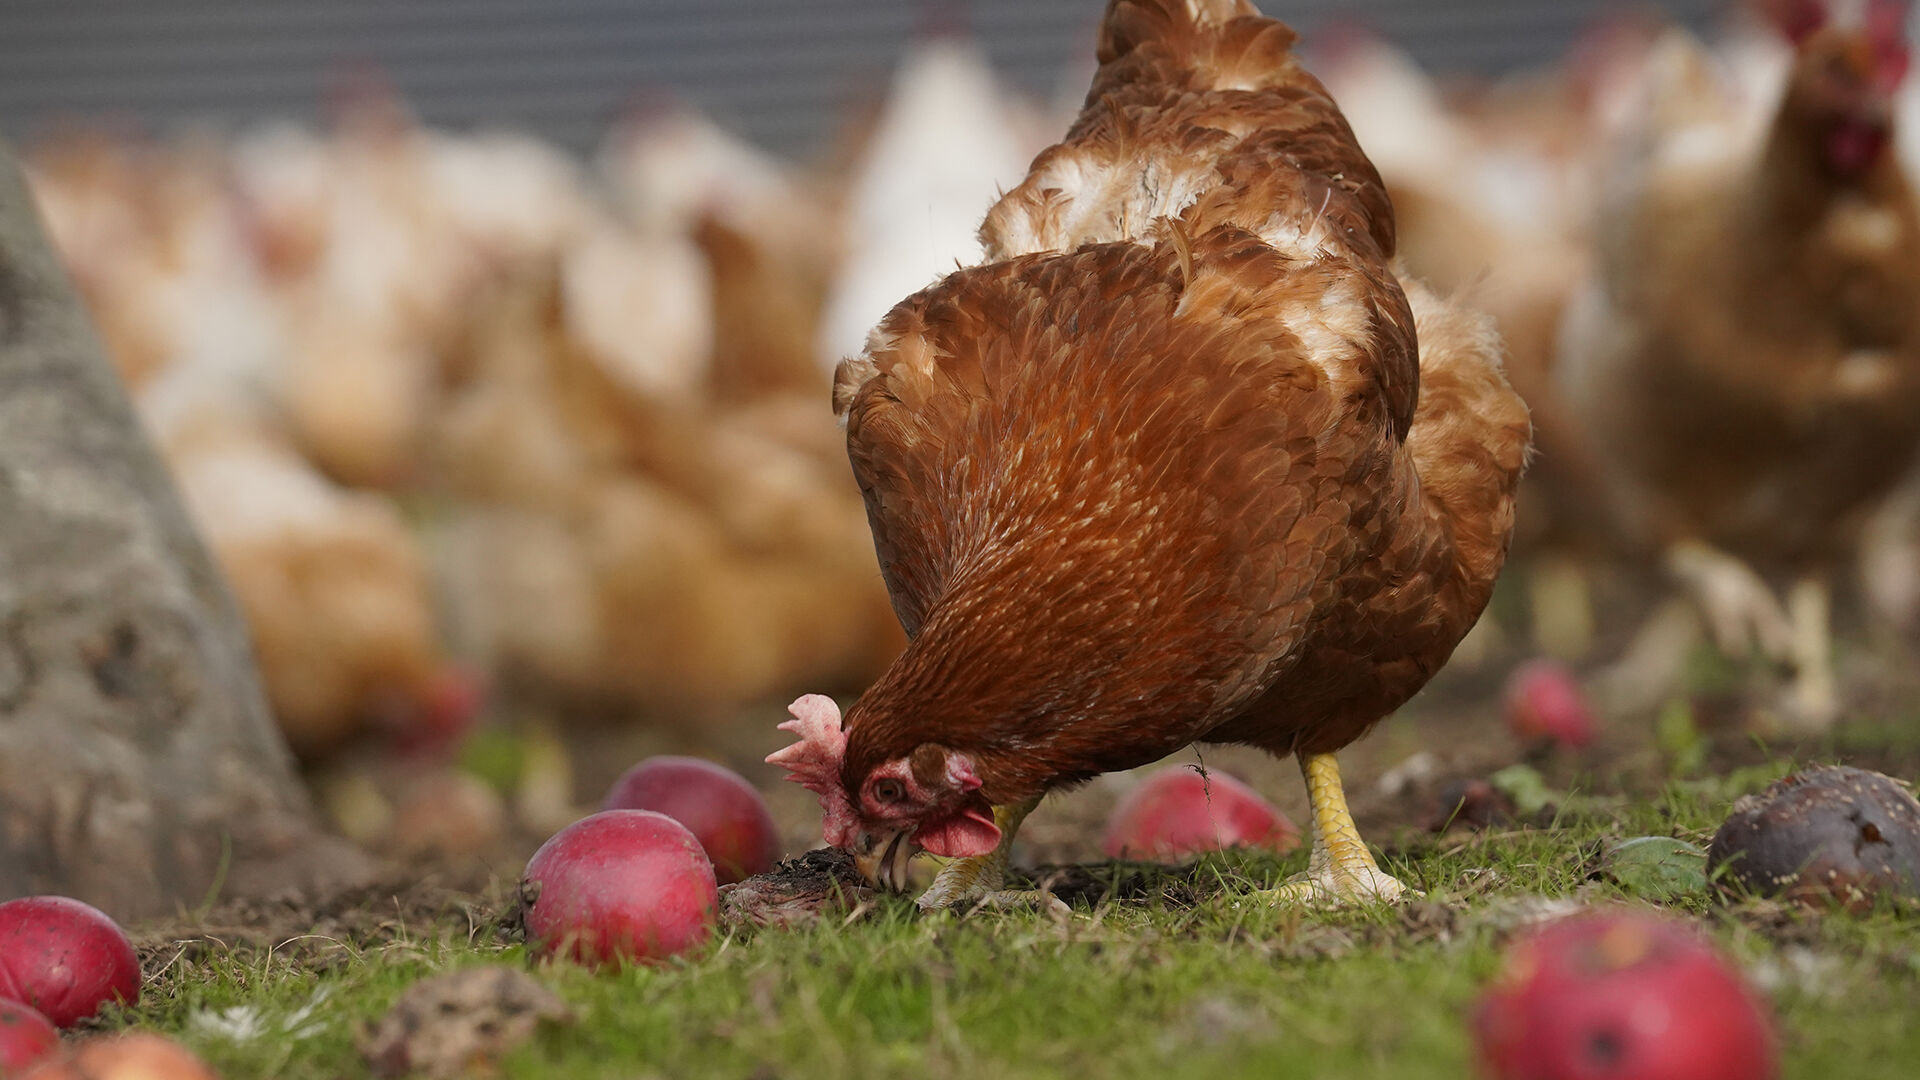 Hos Rokkedahl Foods har de høner og haner, der er forældre til slagtekyllinger i produktionen, også levet et liv i frihed.